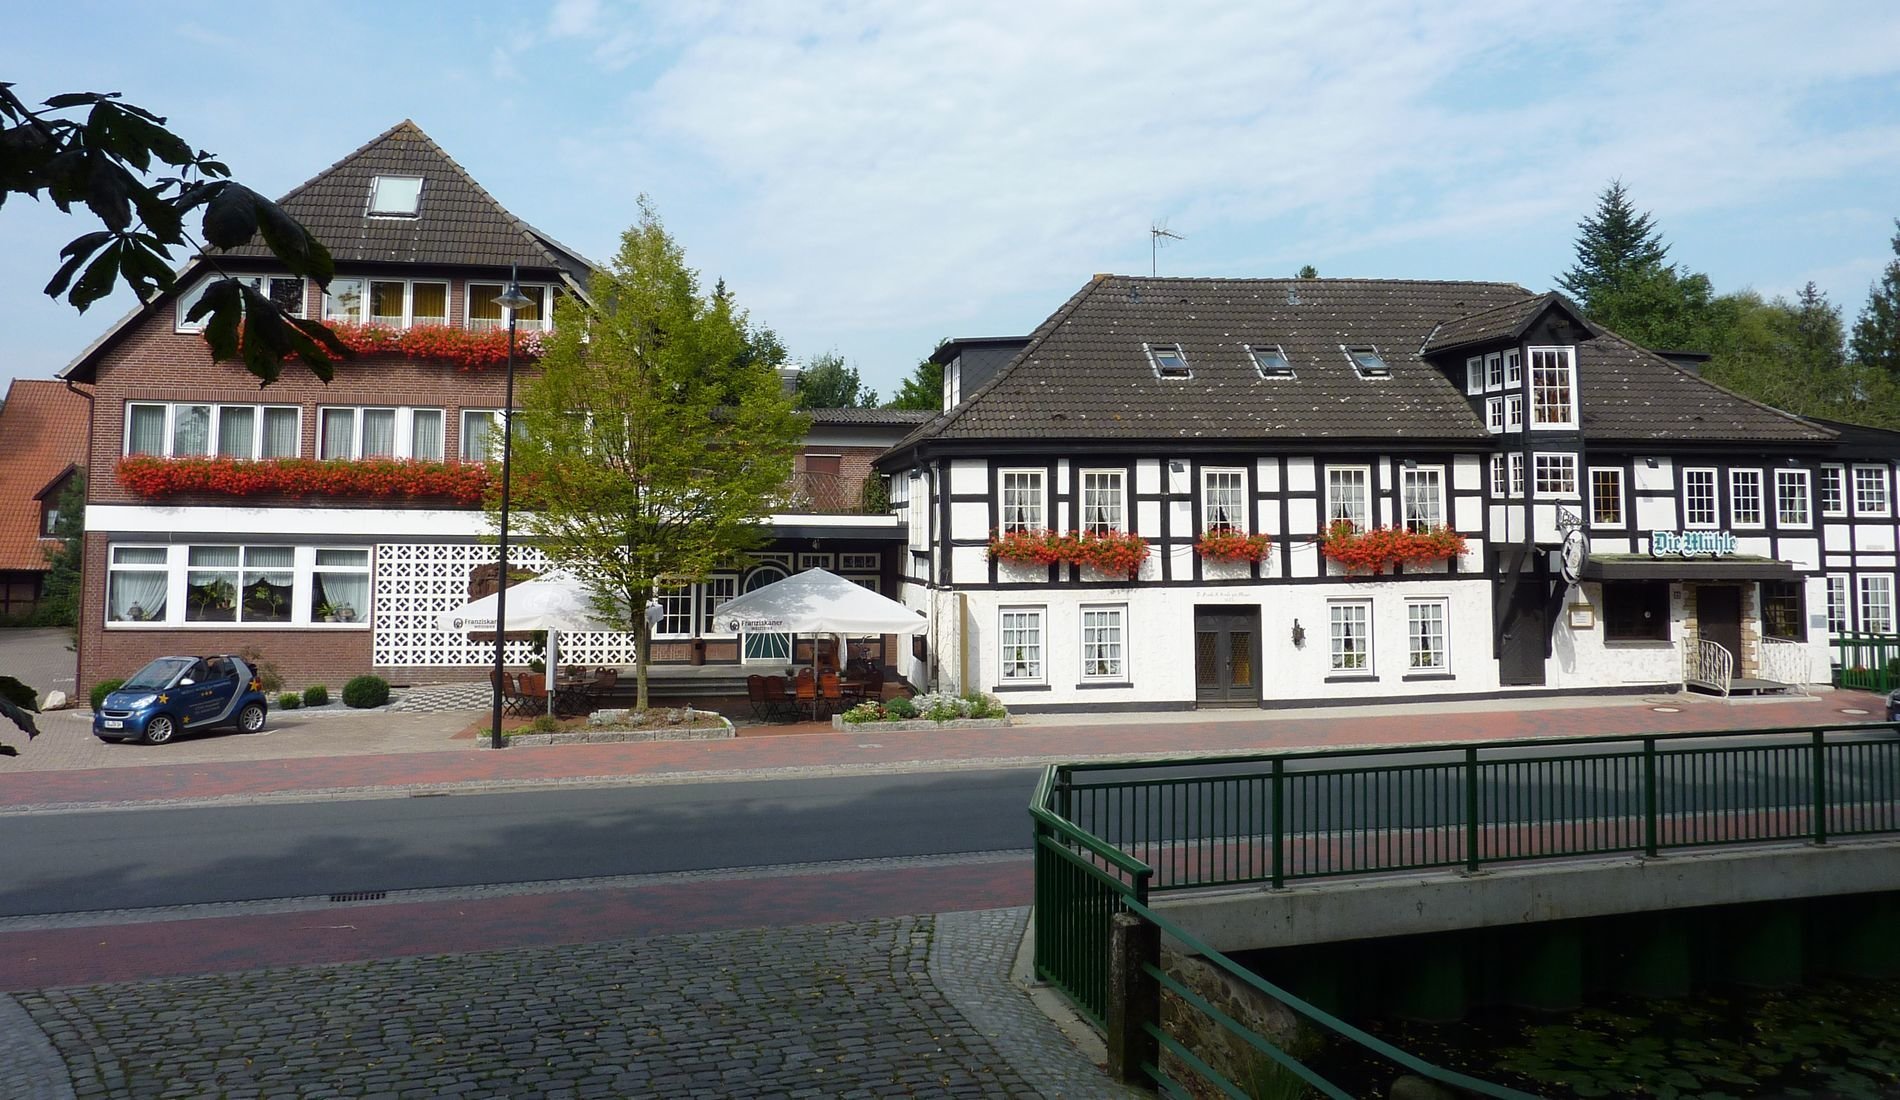 3 Tage Kegler-Wochenende (ab 6 Personen) – AKZENT Hotel Zur Wasserburg (3.5 Sterne) in Harpstedt, Niedersachsen inkl. Halbpension